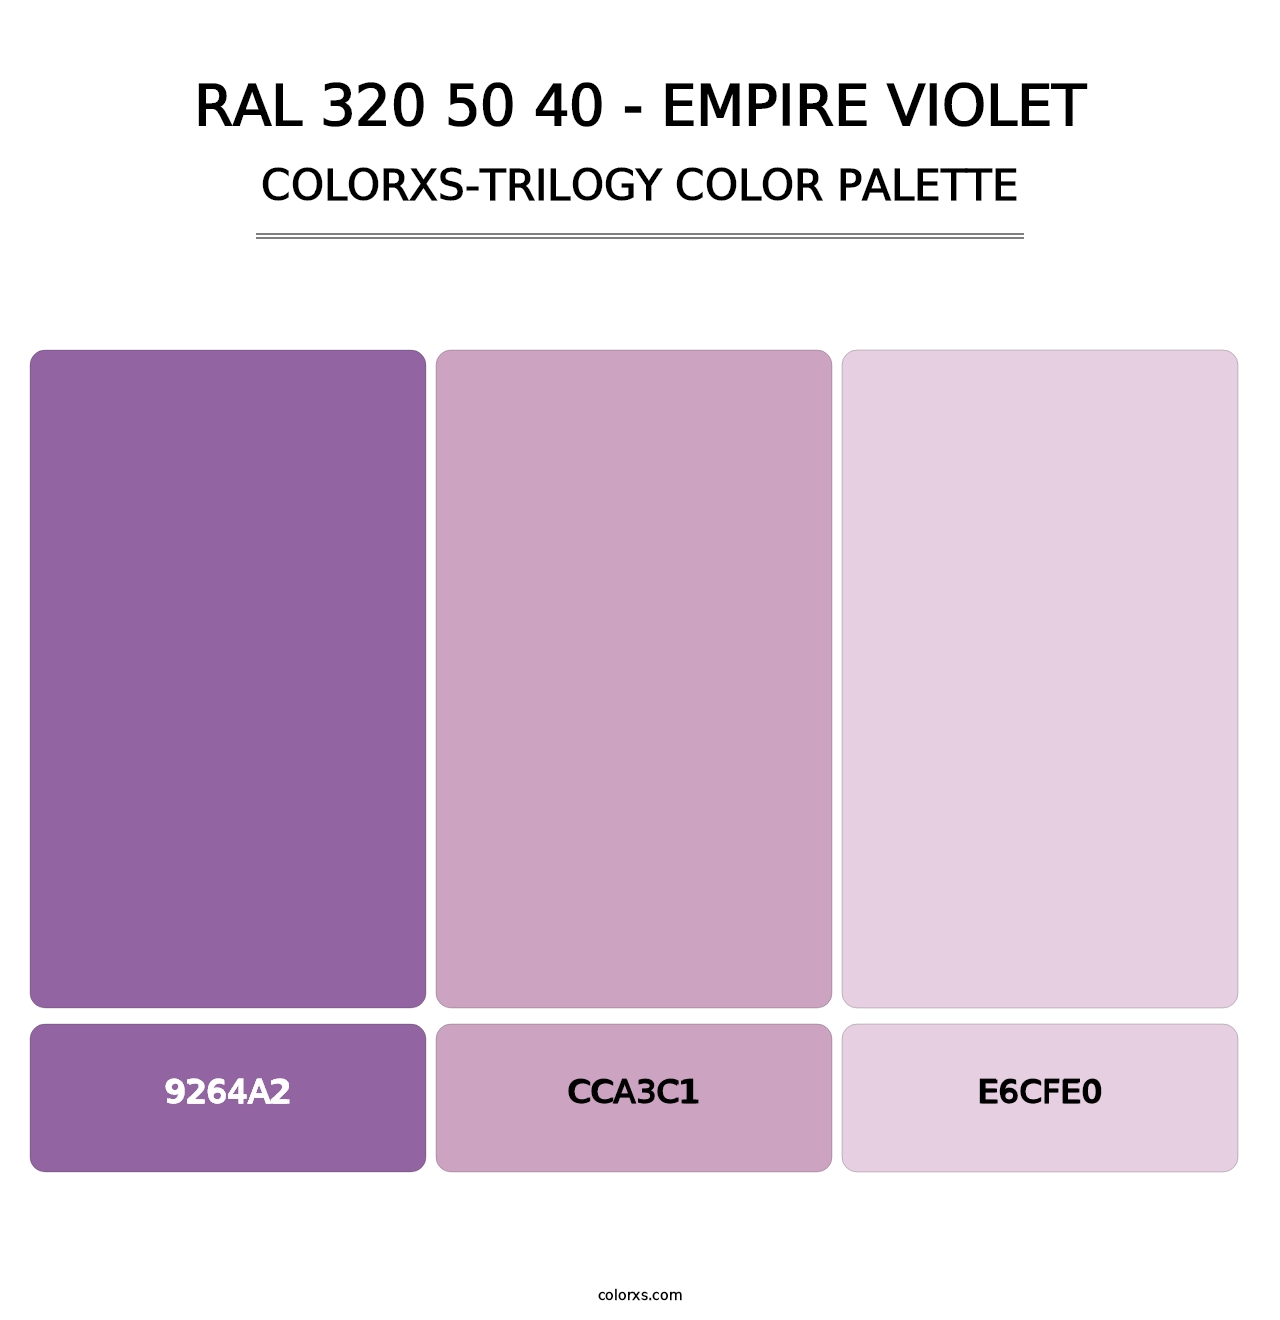 RAL 320 50 40 - Empire Violet - Colorxs Trilogy Palette